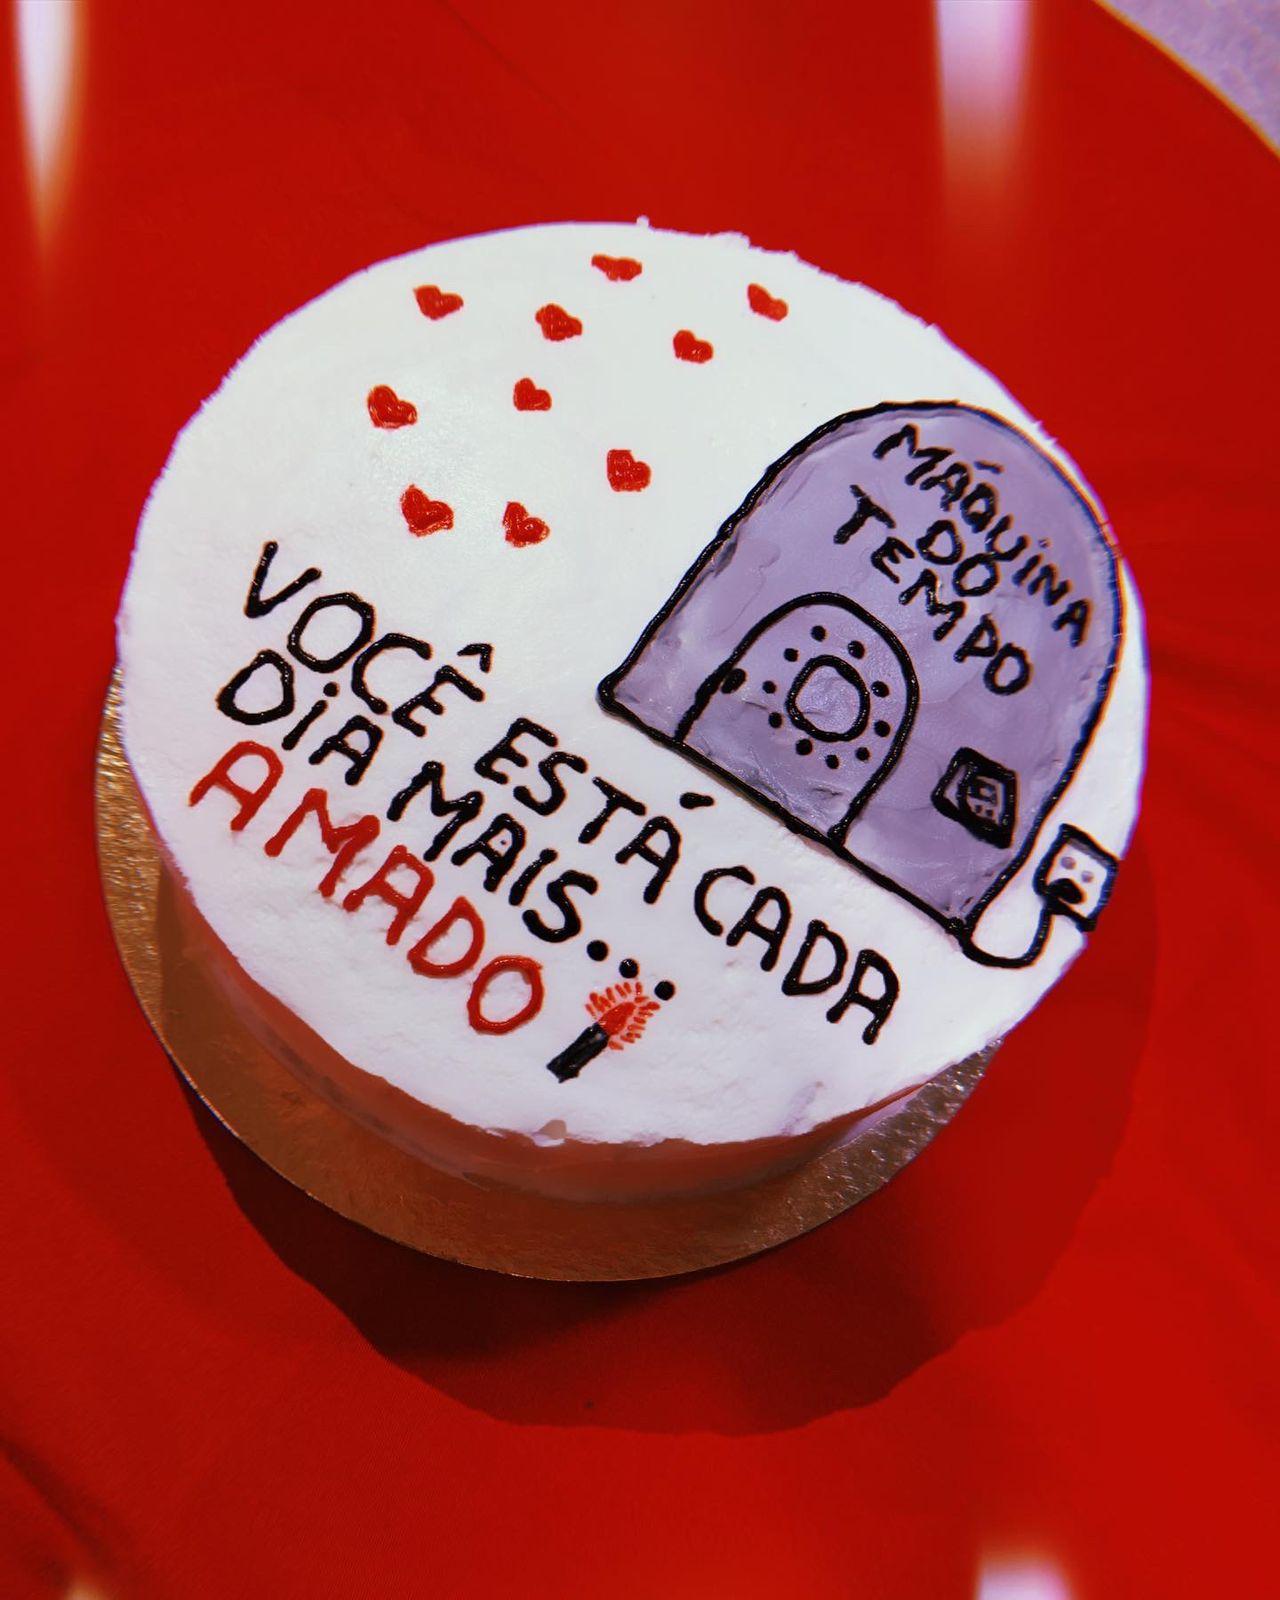 Bentô cake: minibolo com meme é o mais pedido em confeitaria na PB; entenda  tendência, Paraíba